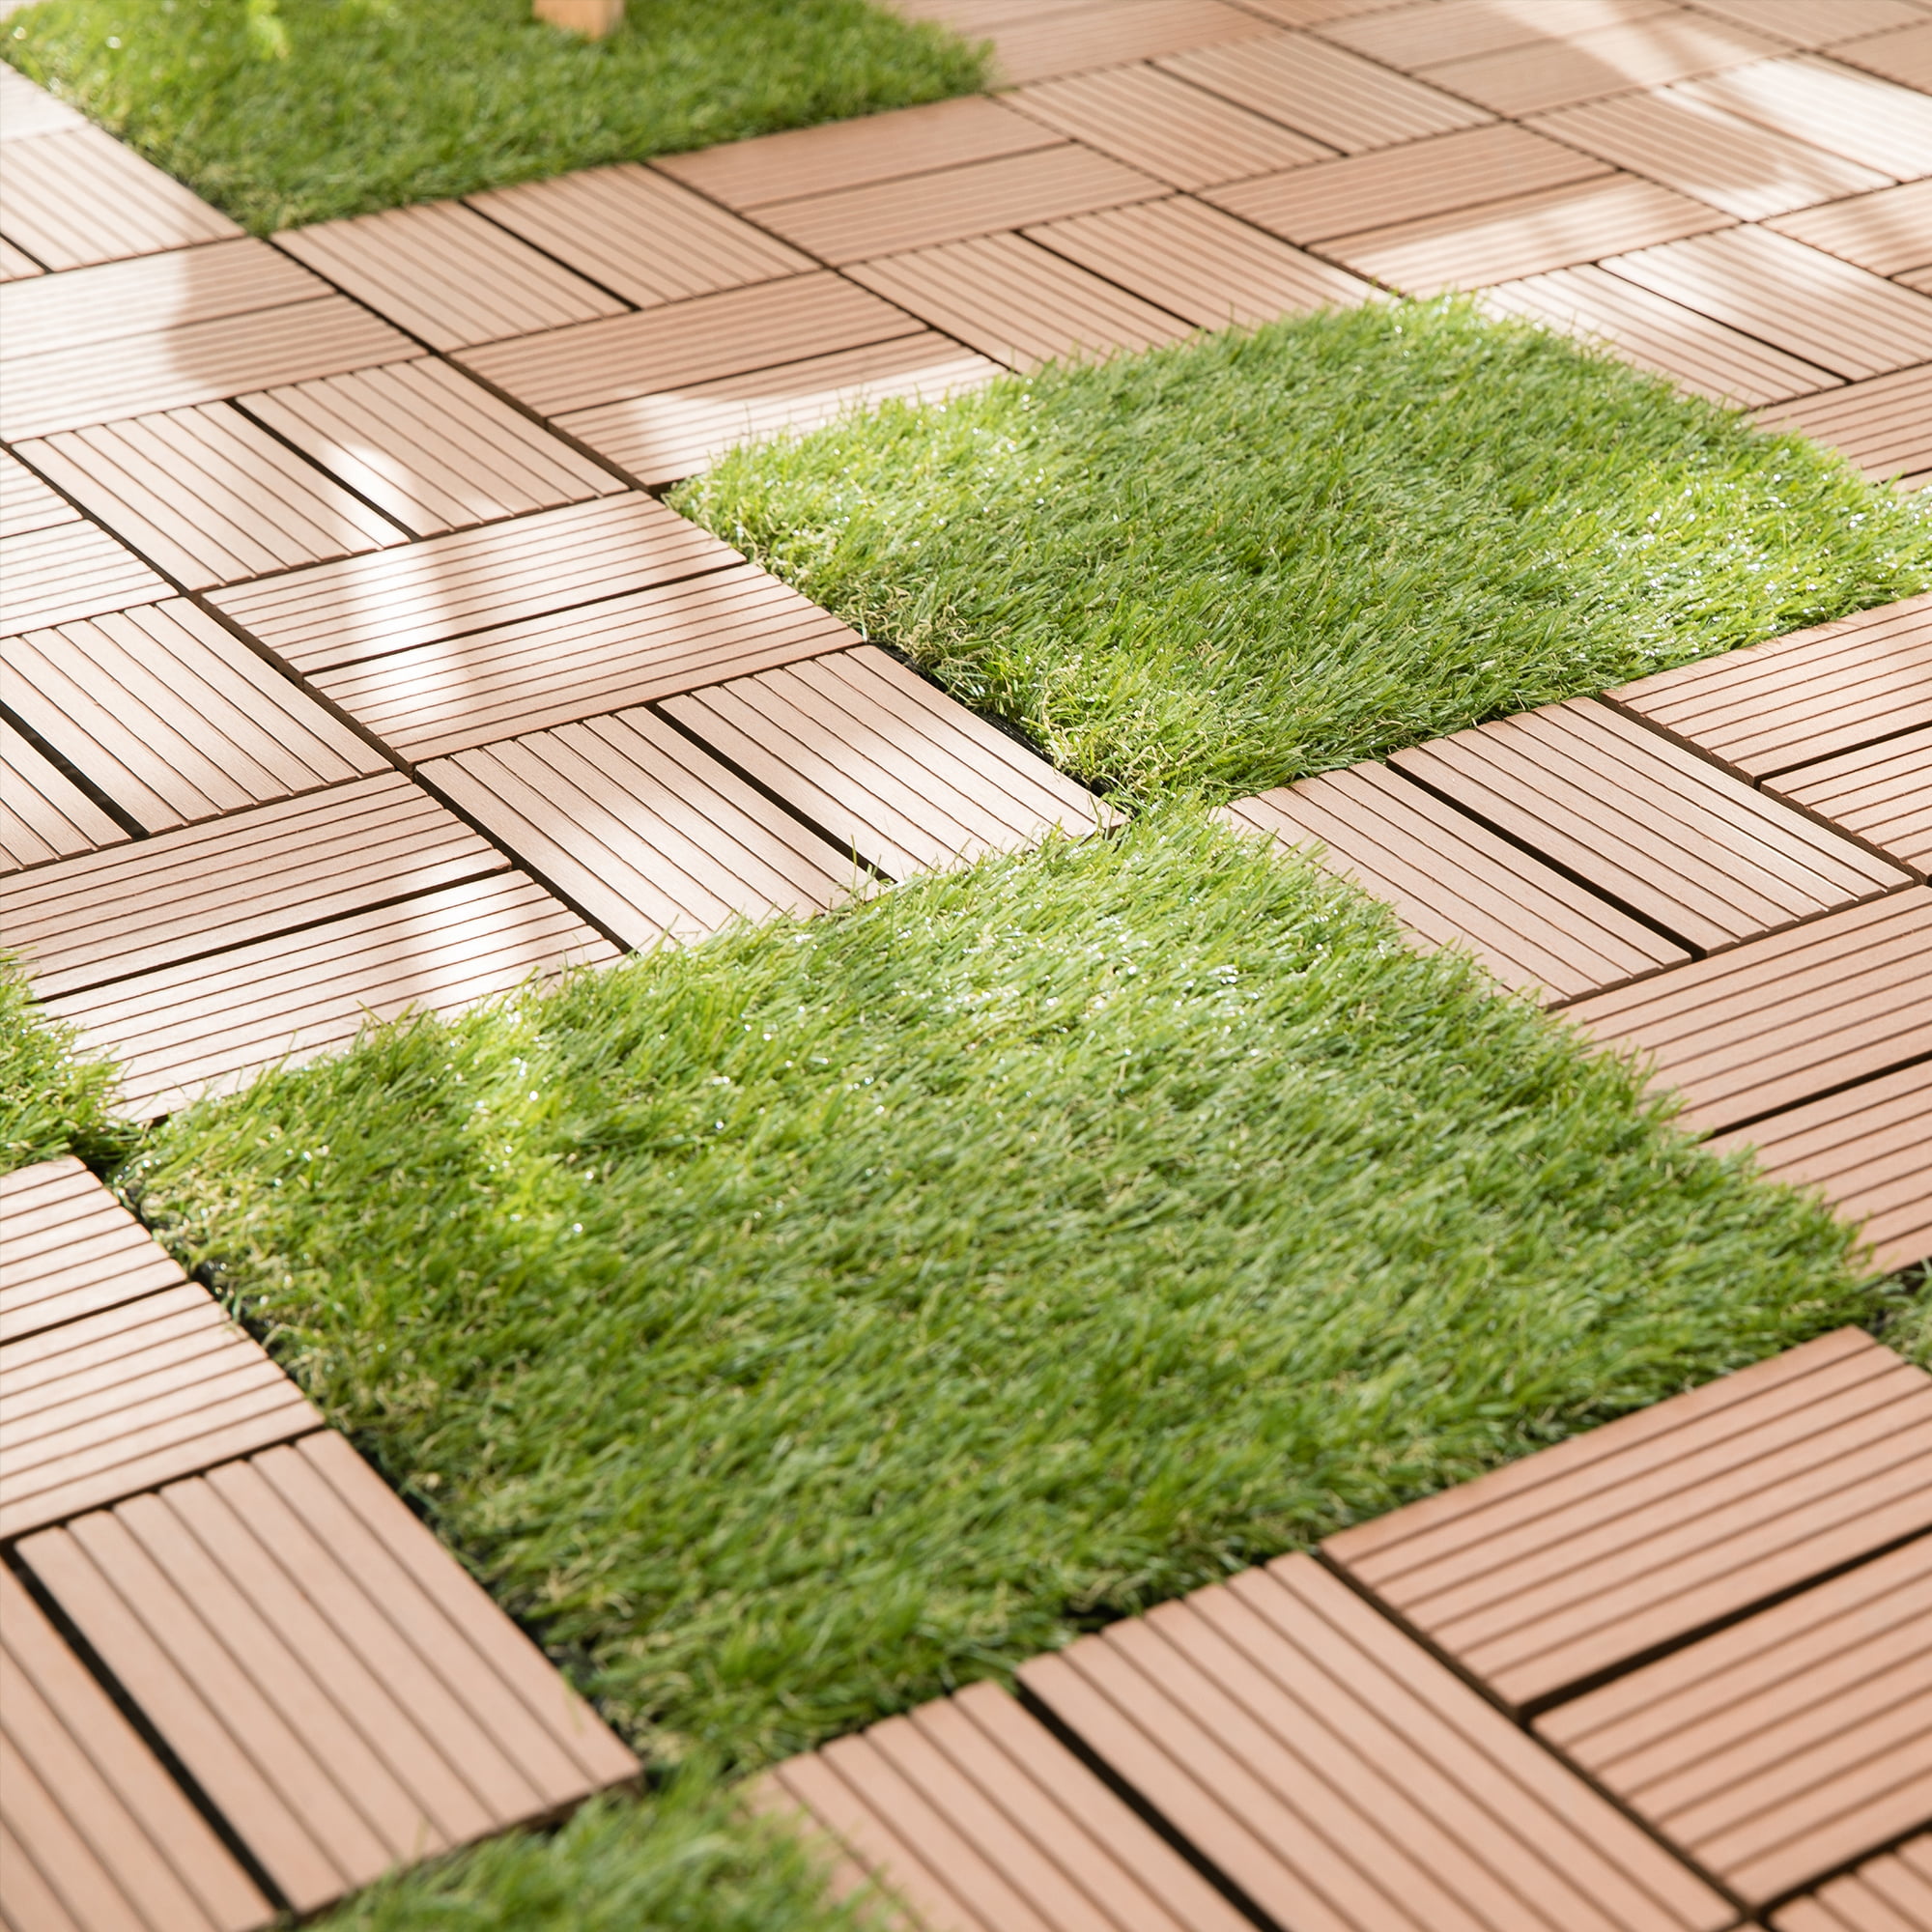 Samincom Grass Tile Series Interlocking Grass Deck Tiles Artificial Turf Tiles 